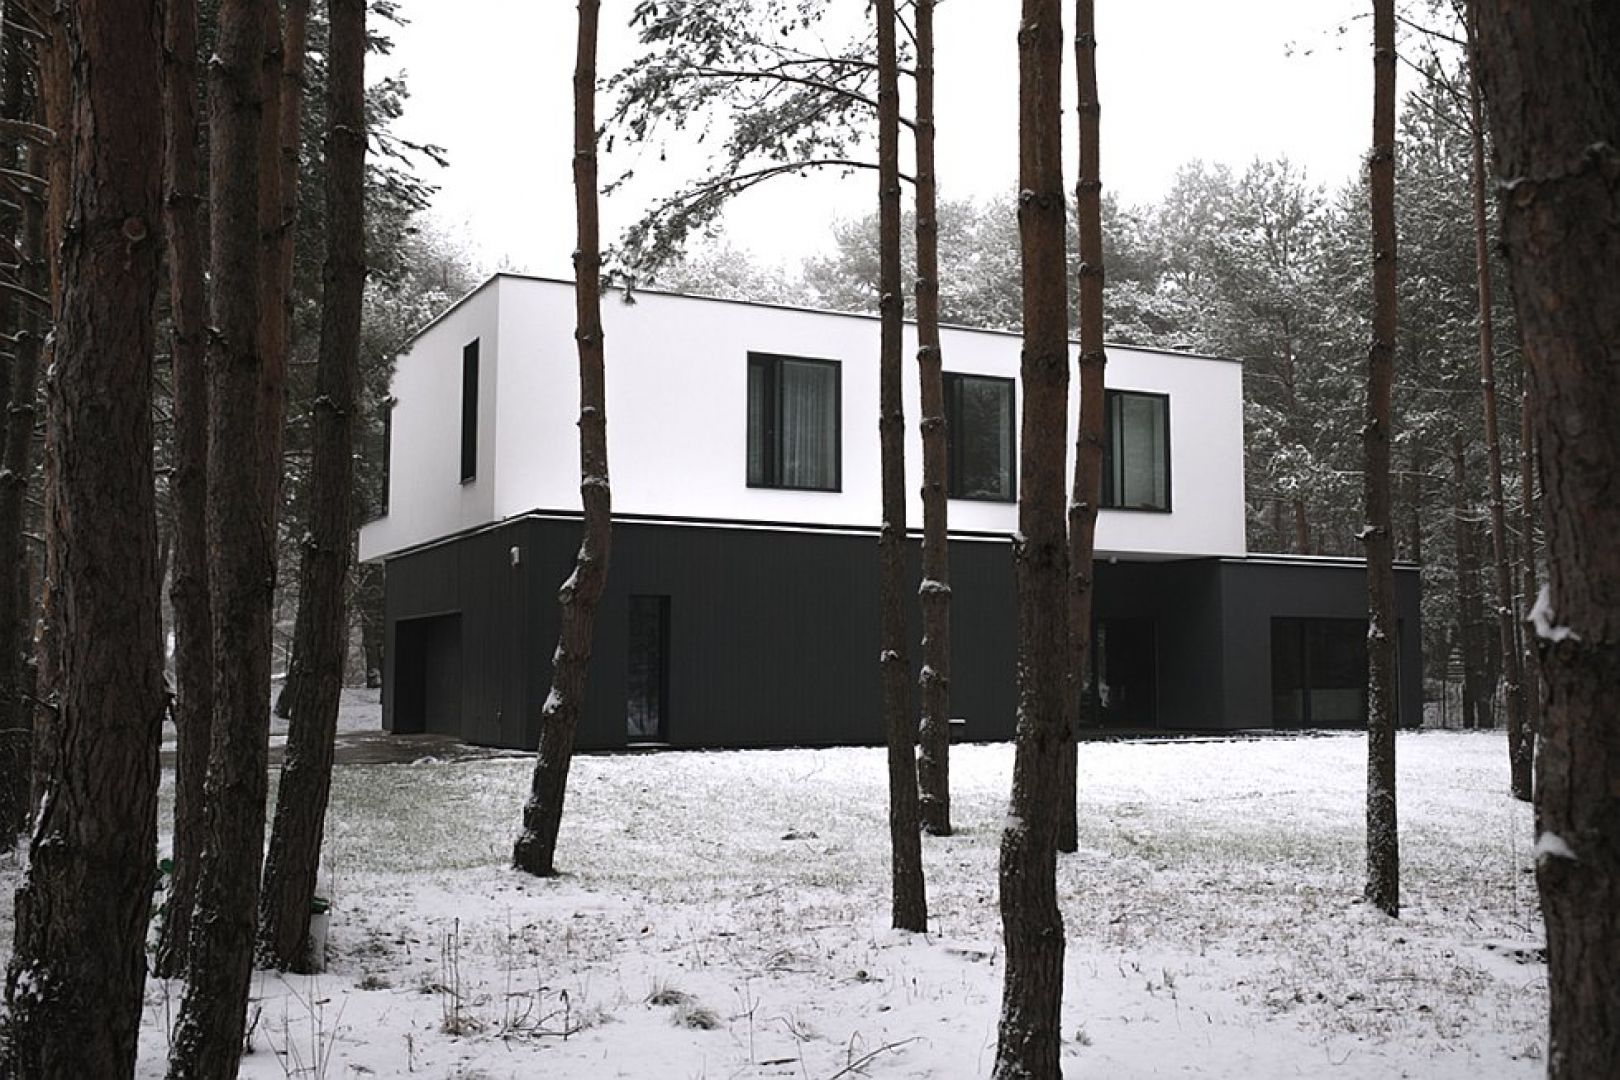 Kolorystyka domu wpisuje się w leśny krajobraz, zwłaszcza ten zimowy. Fot. zw A